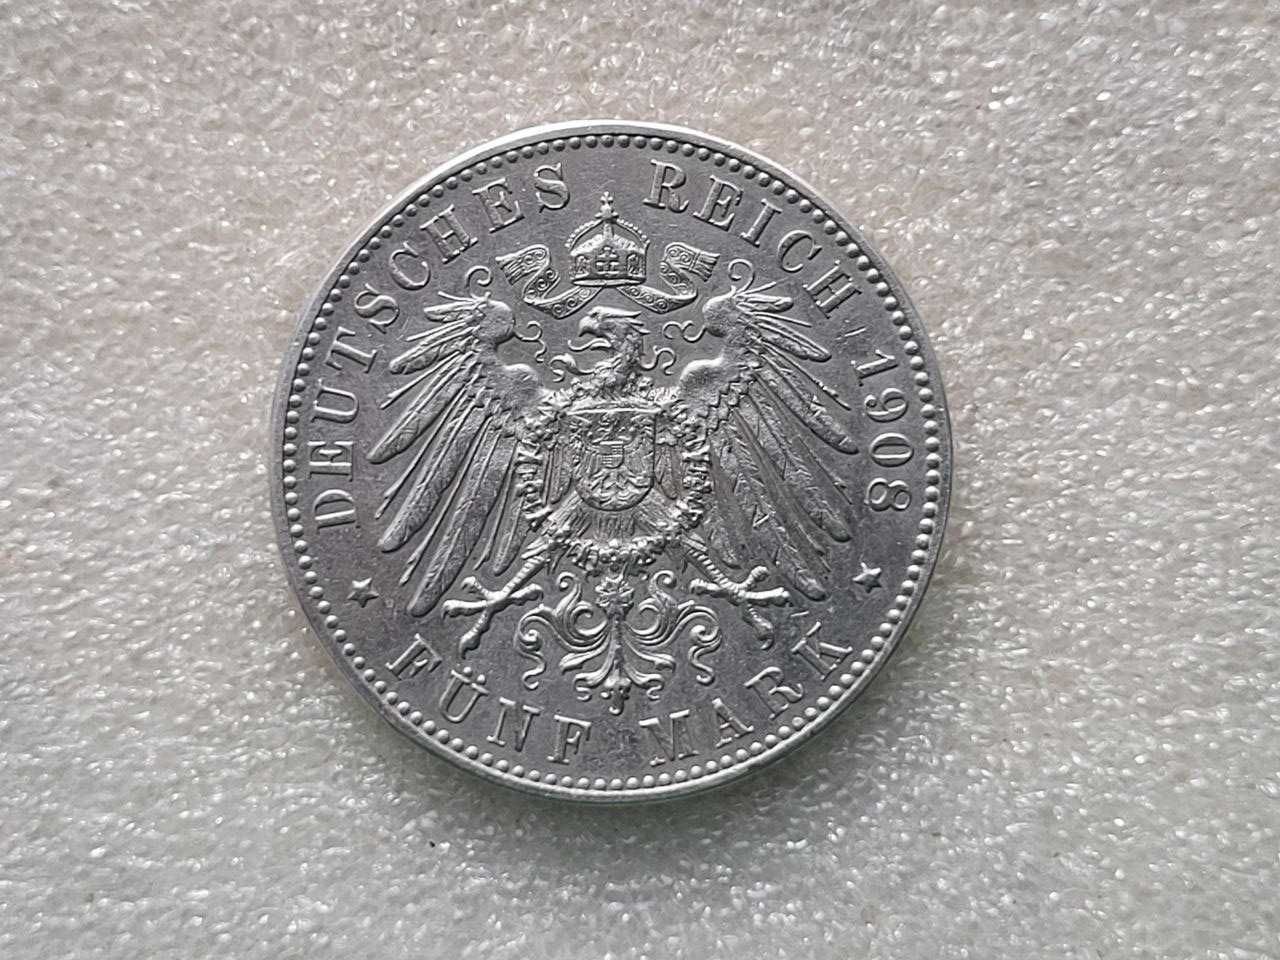 Серебряные монеты Германии разных времён